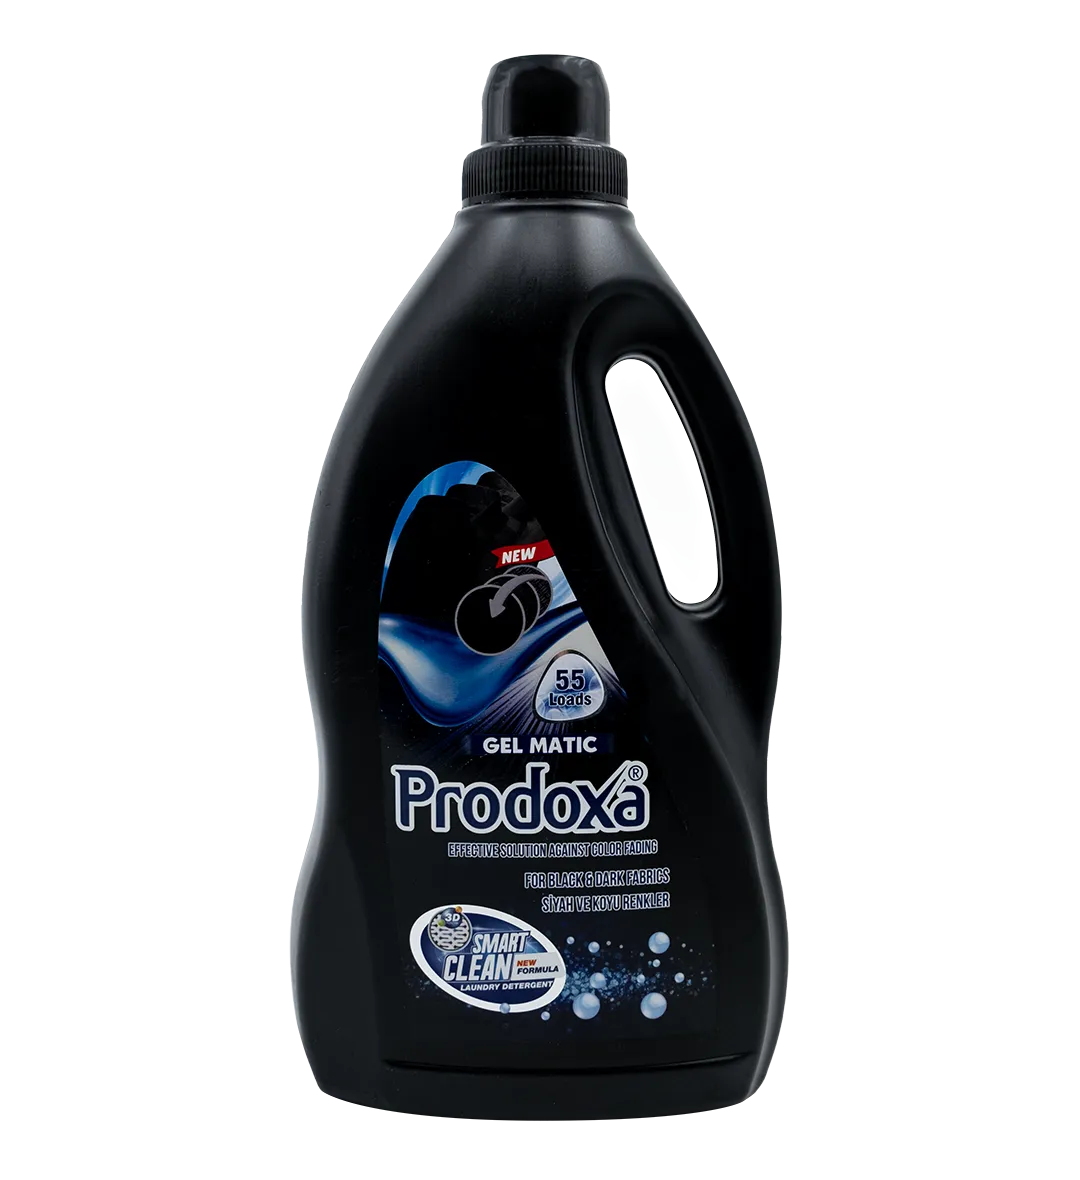 Prodoxa 3 Lt Laundry Detergent For Black